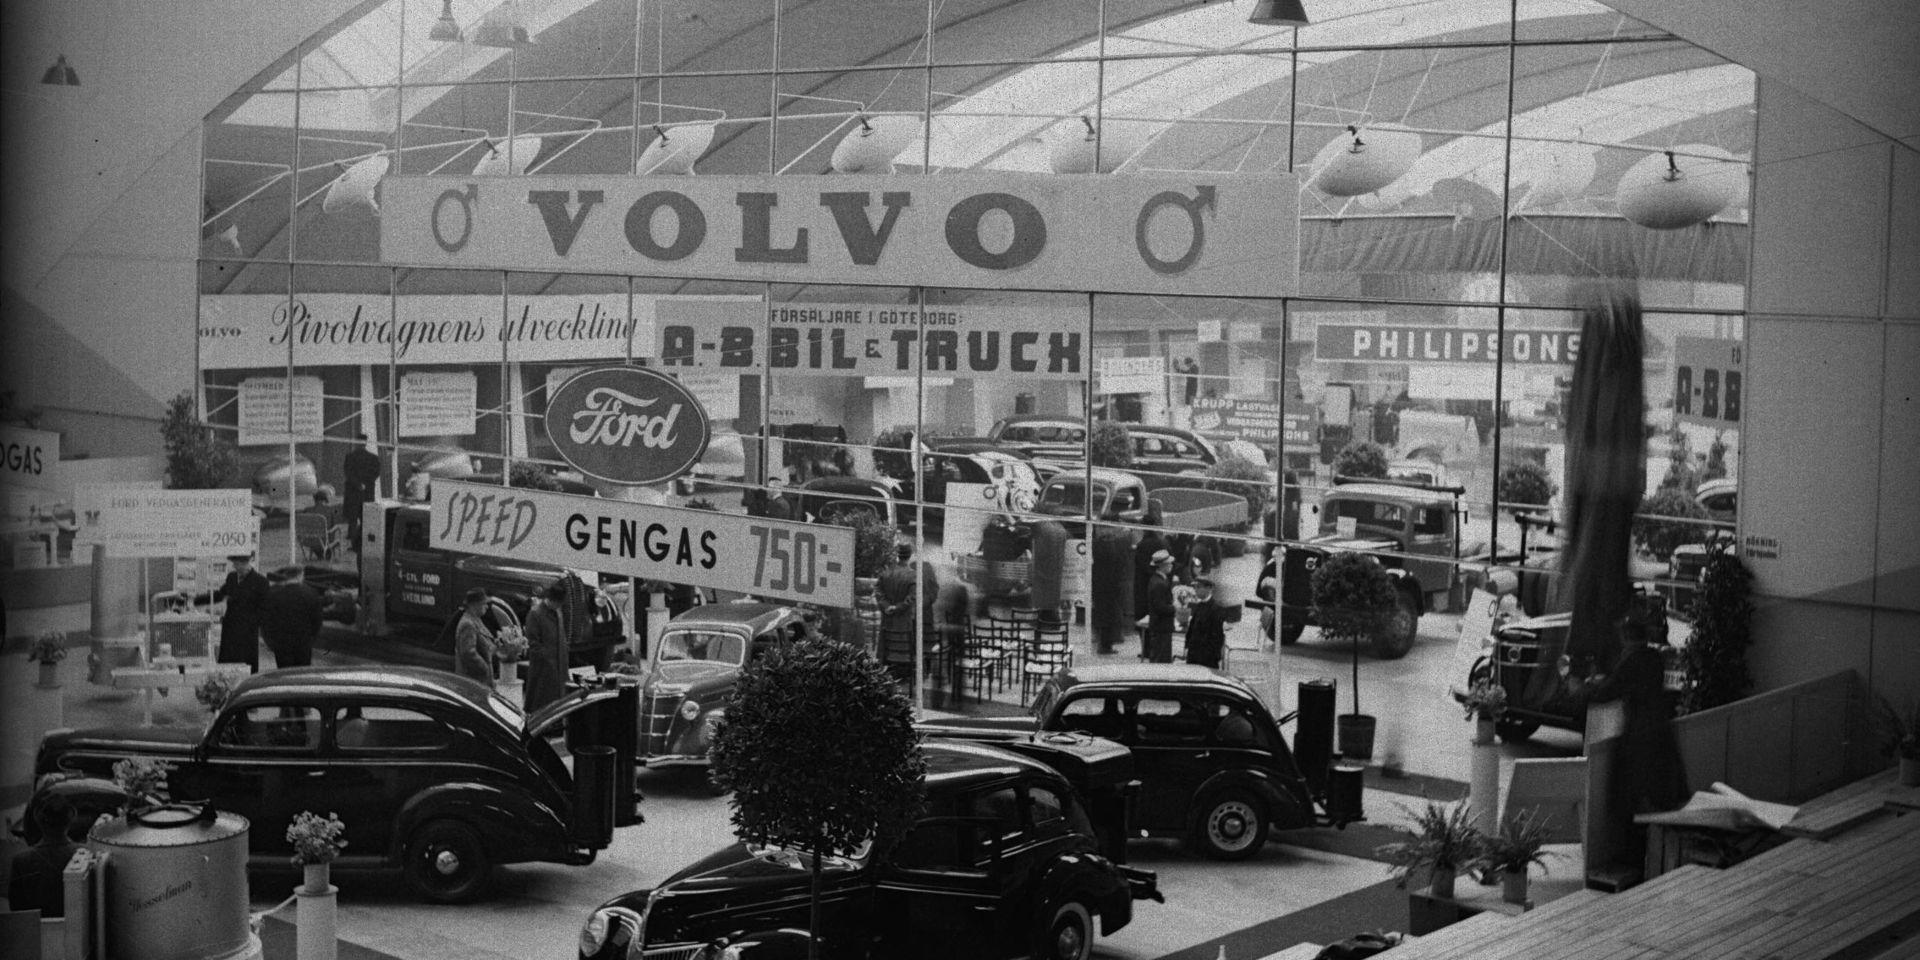 Volvo hade en väldesignad monter vid den stora gengasutställningen i december 1940.